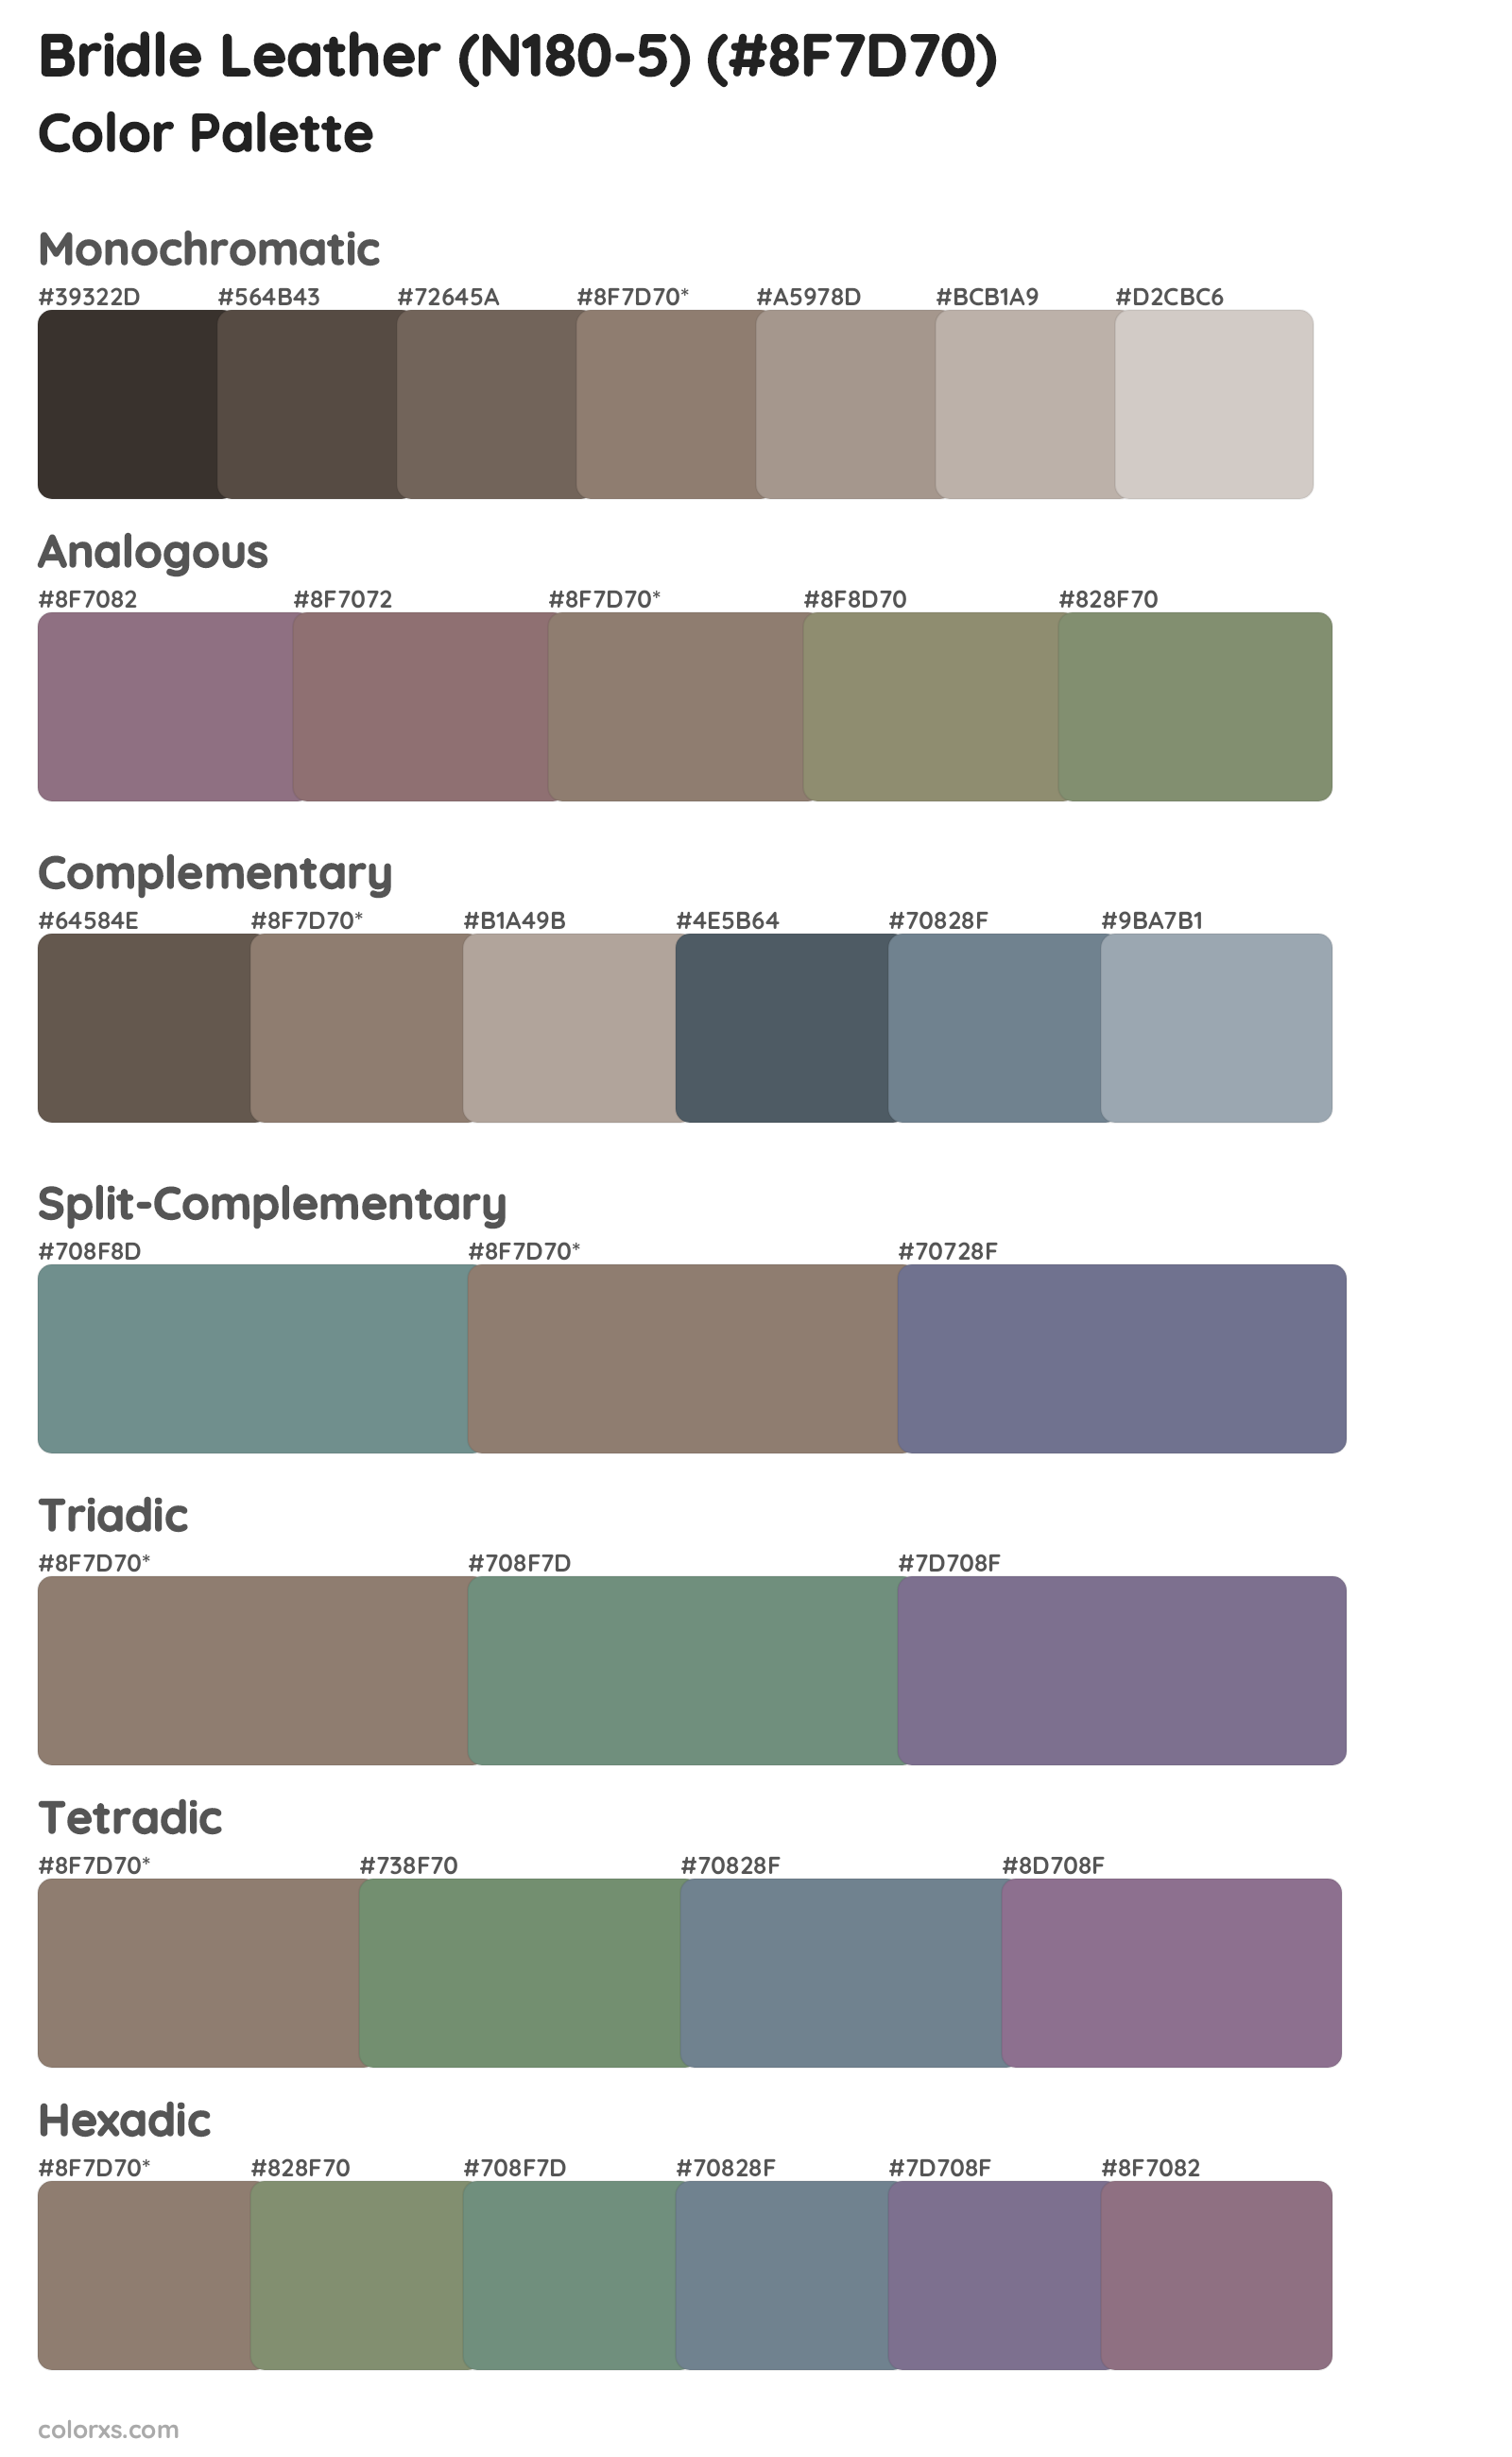 Bridle Leather (N180-5) Color Scheme Palettes